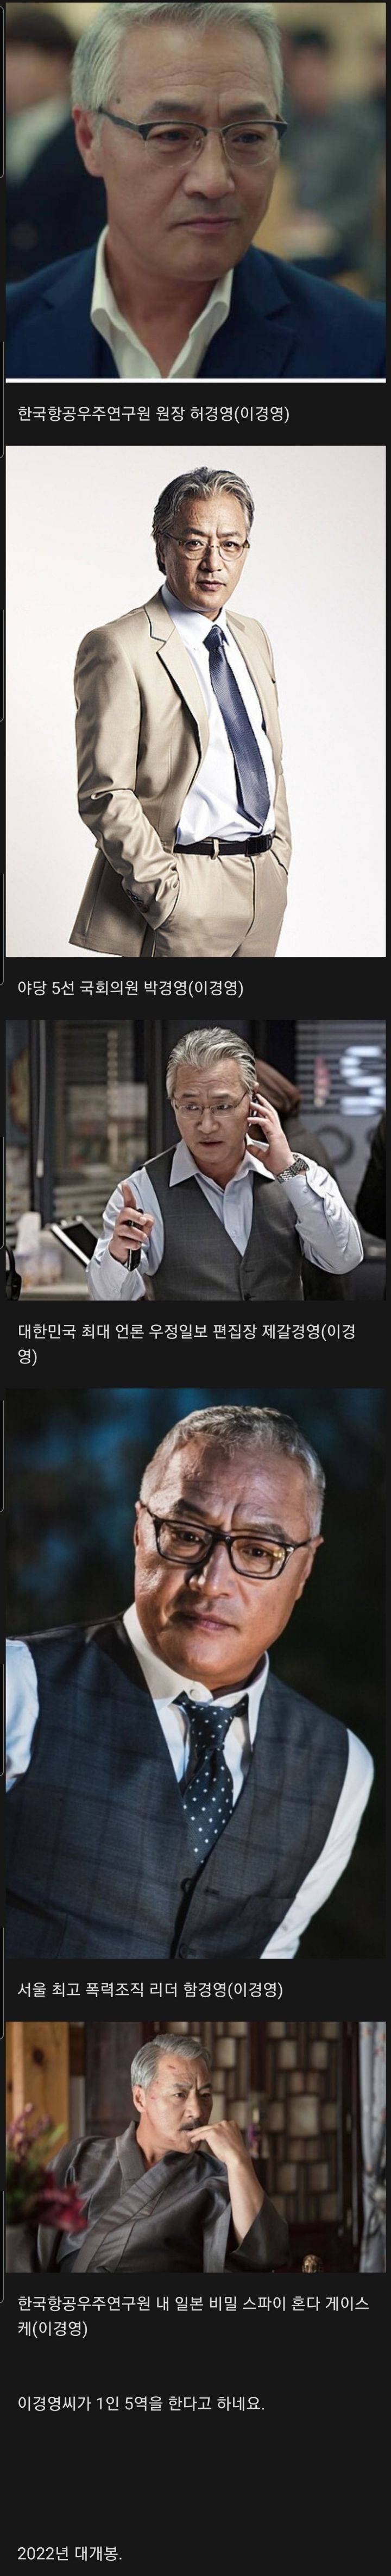 속보)2022 한국영화 최고 기대작 누리호크랭크인.jpg | 인스티즈